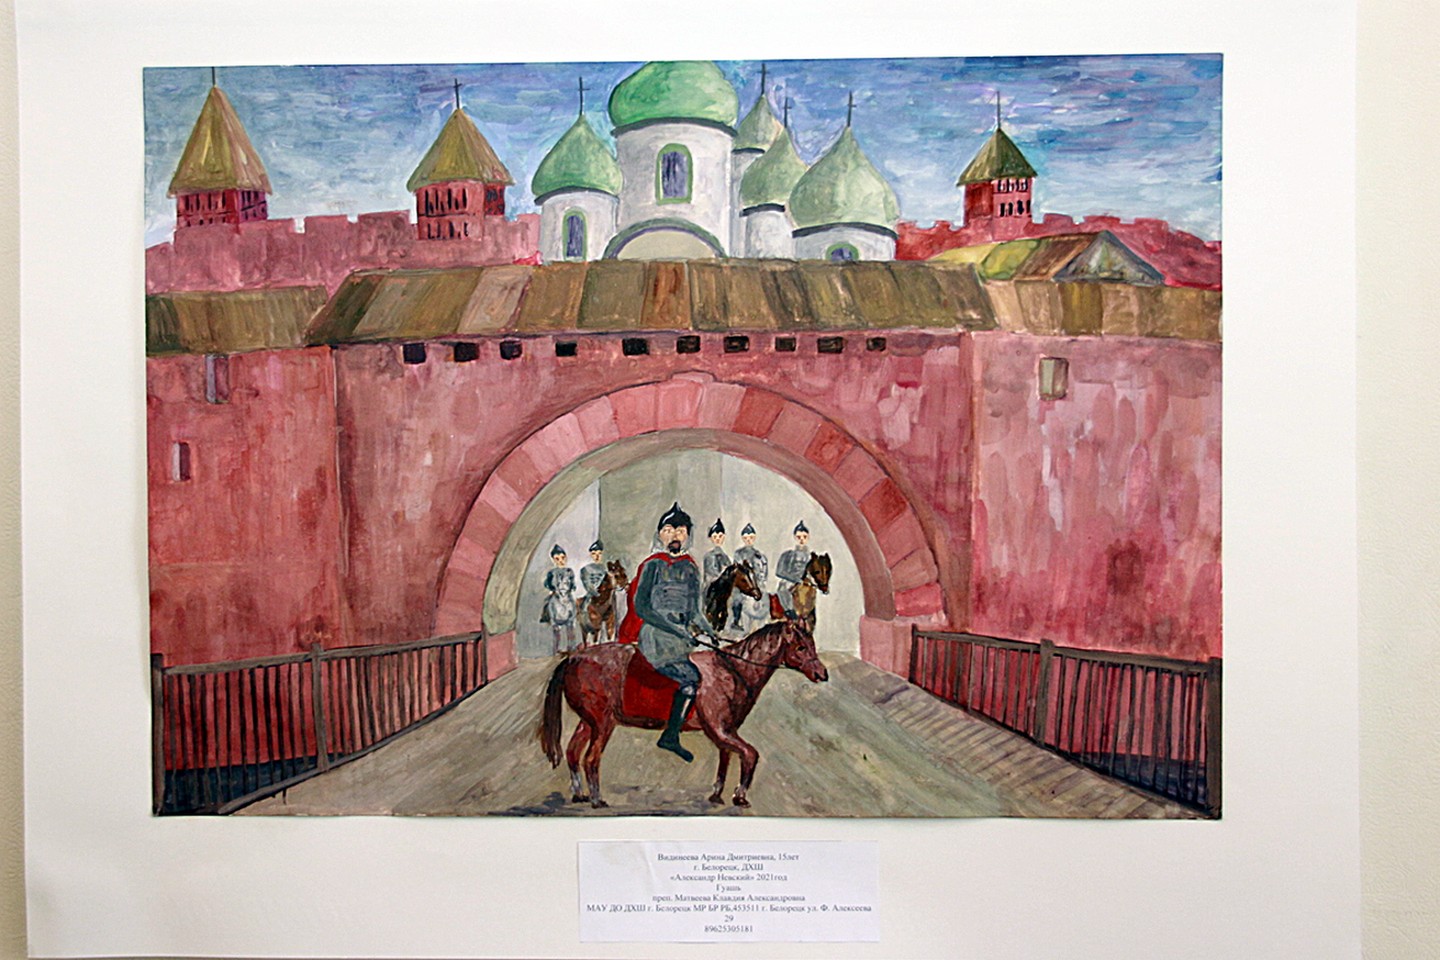 Открытие республиканской выставки детского рисунка в галерее «Урал»